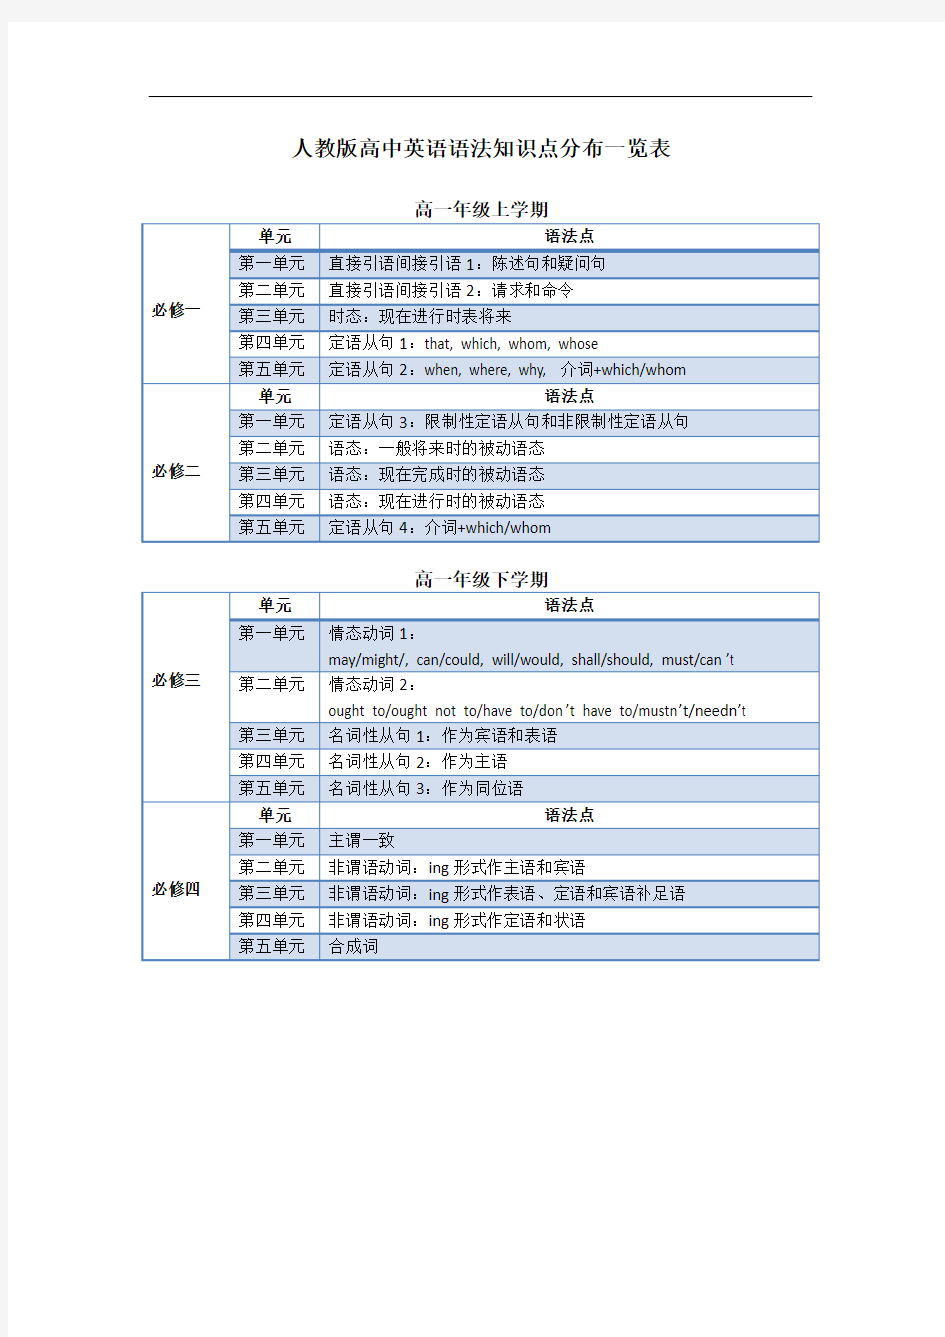 人教版高中英语教材语法的知识点分布(1-8)